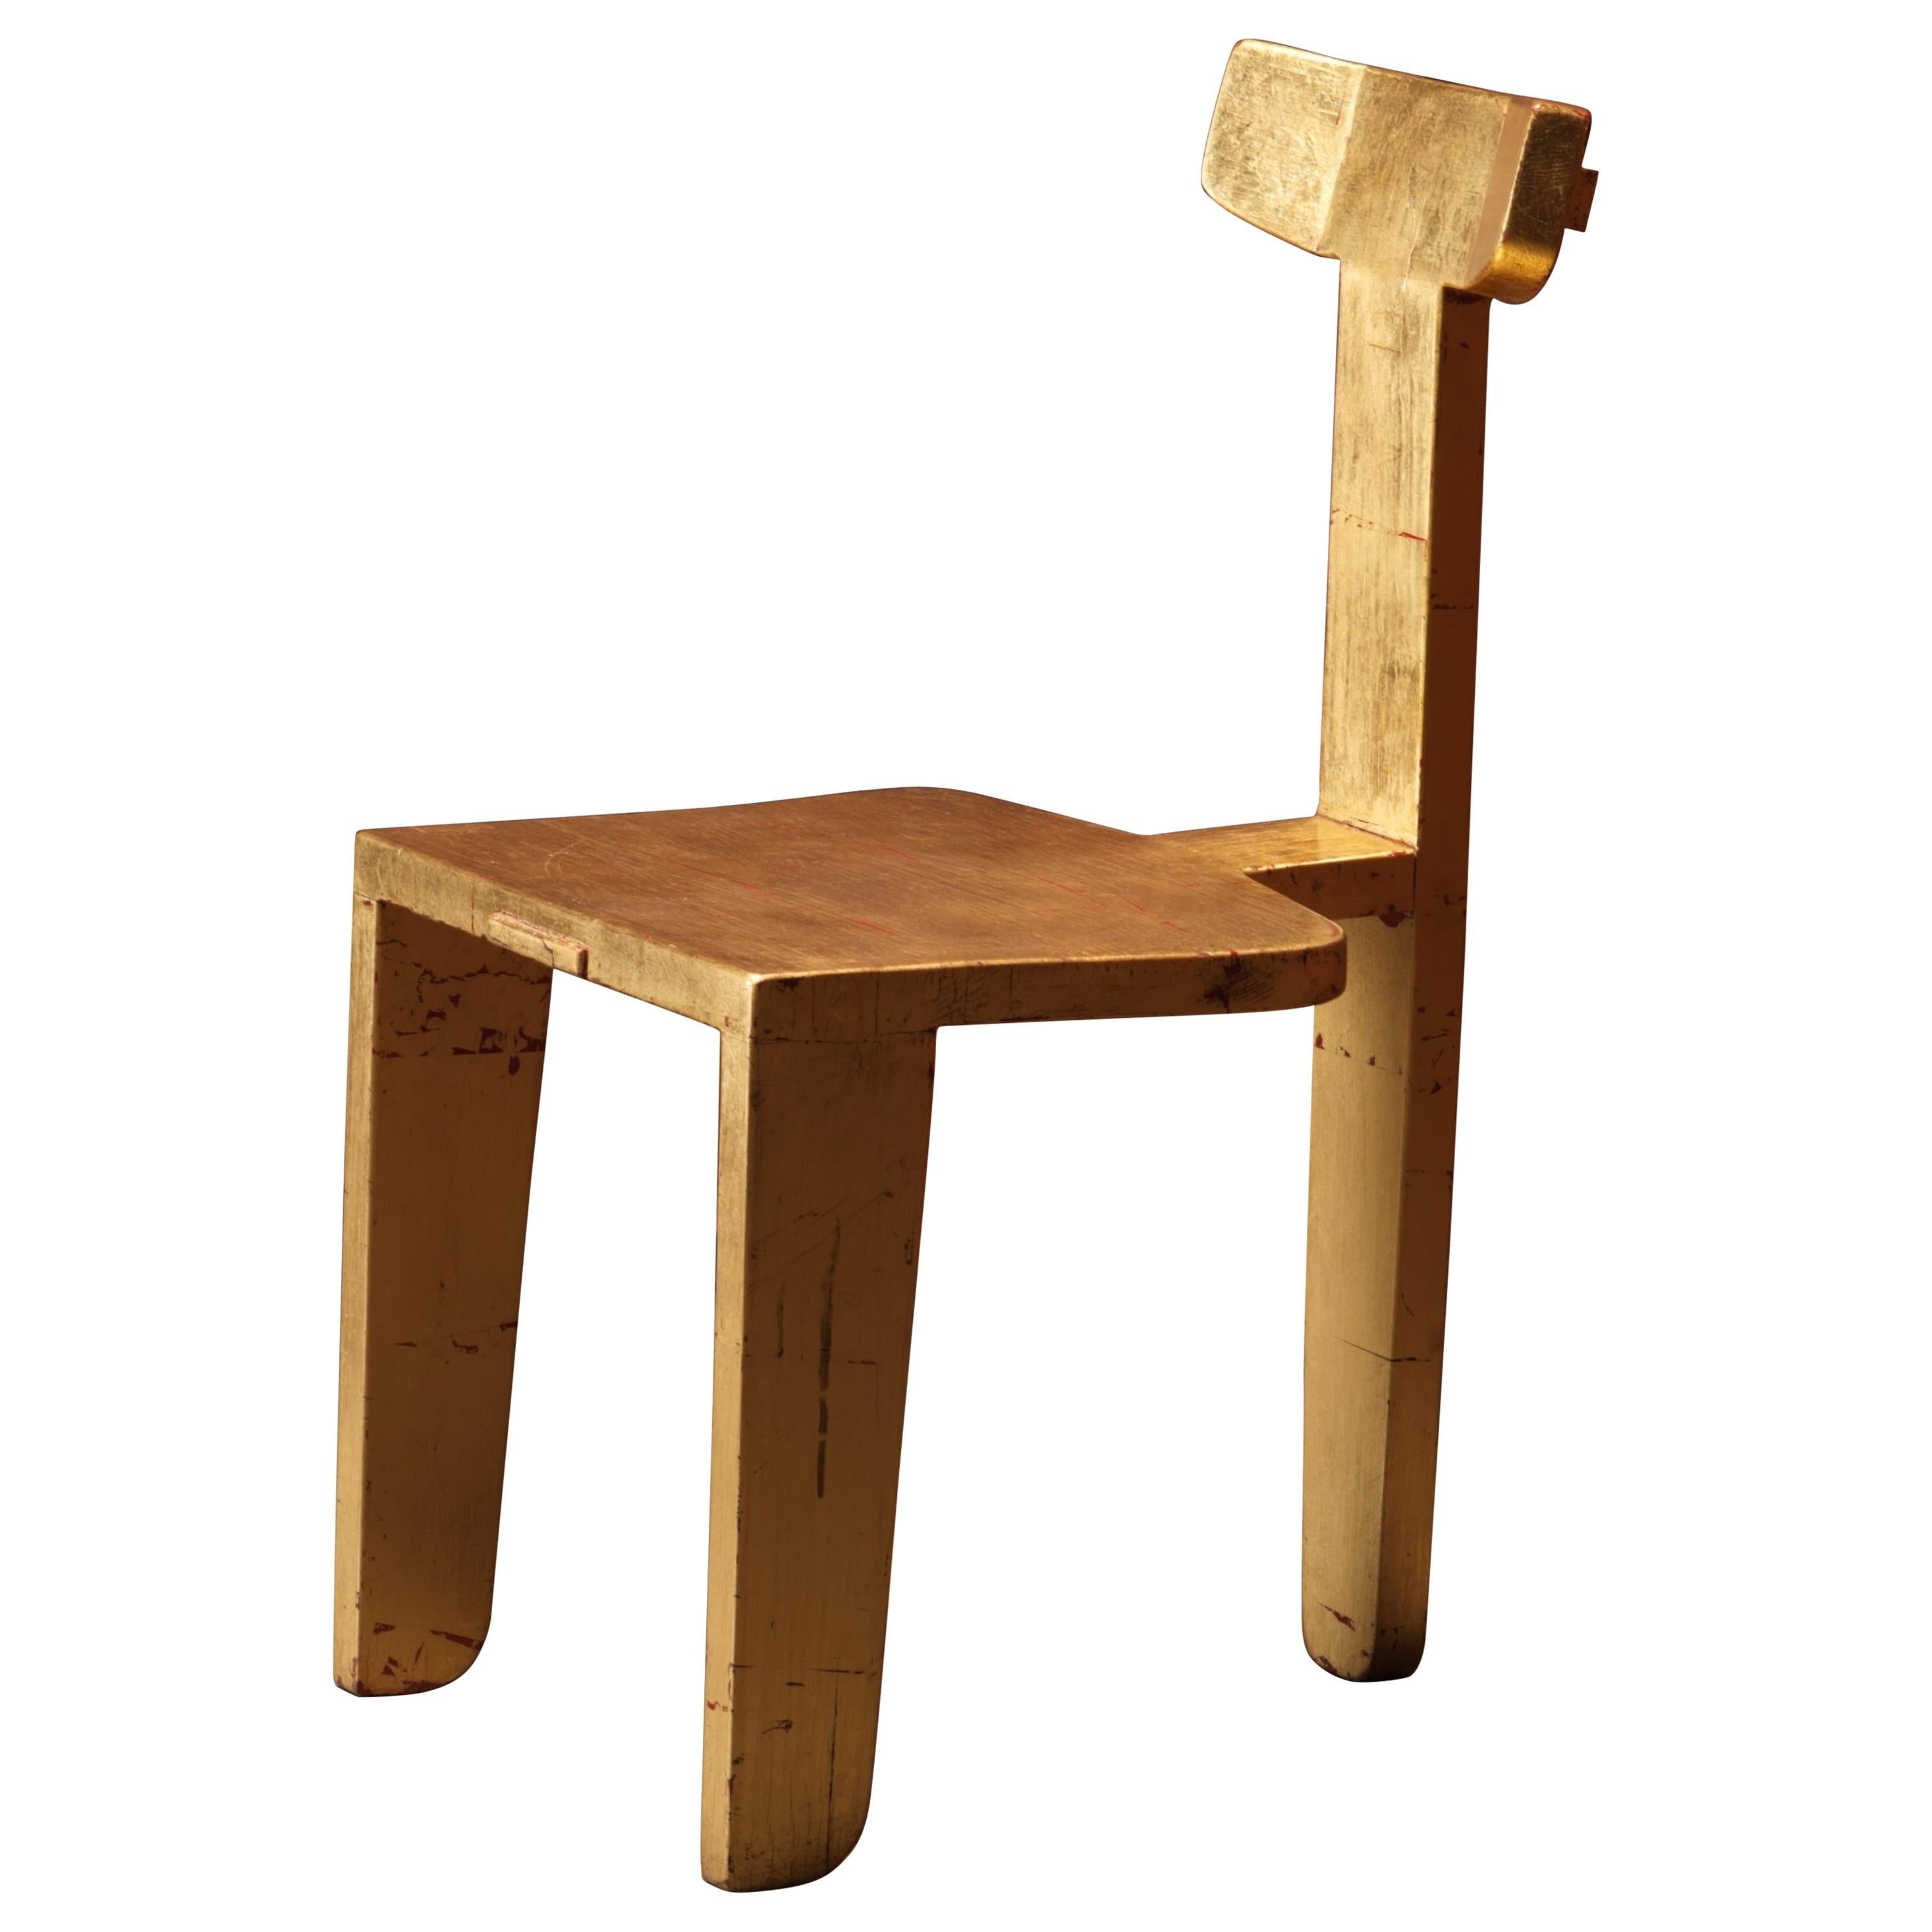 Blattgoldener Stuhl von Laredo, 3-bein, zeitgenössisches Design mit traditioneller Tischlerei